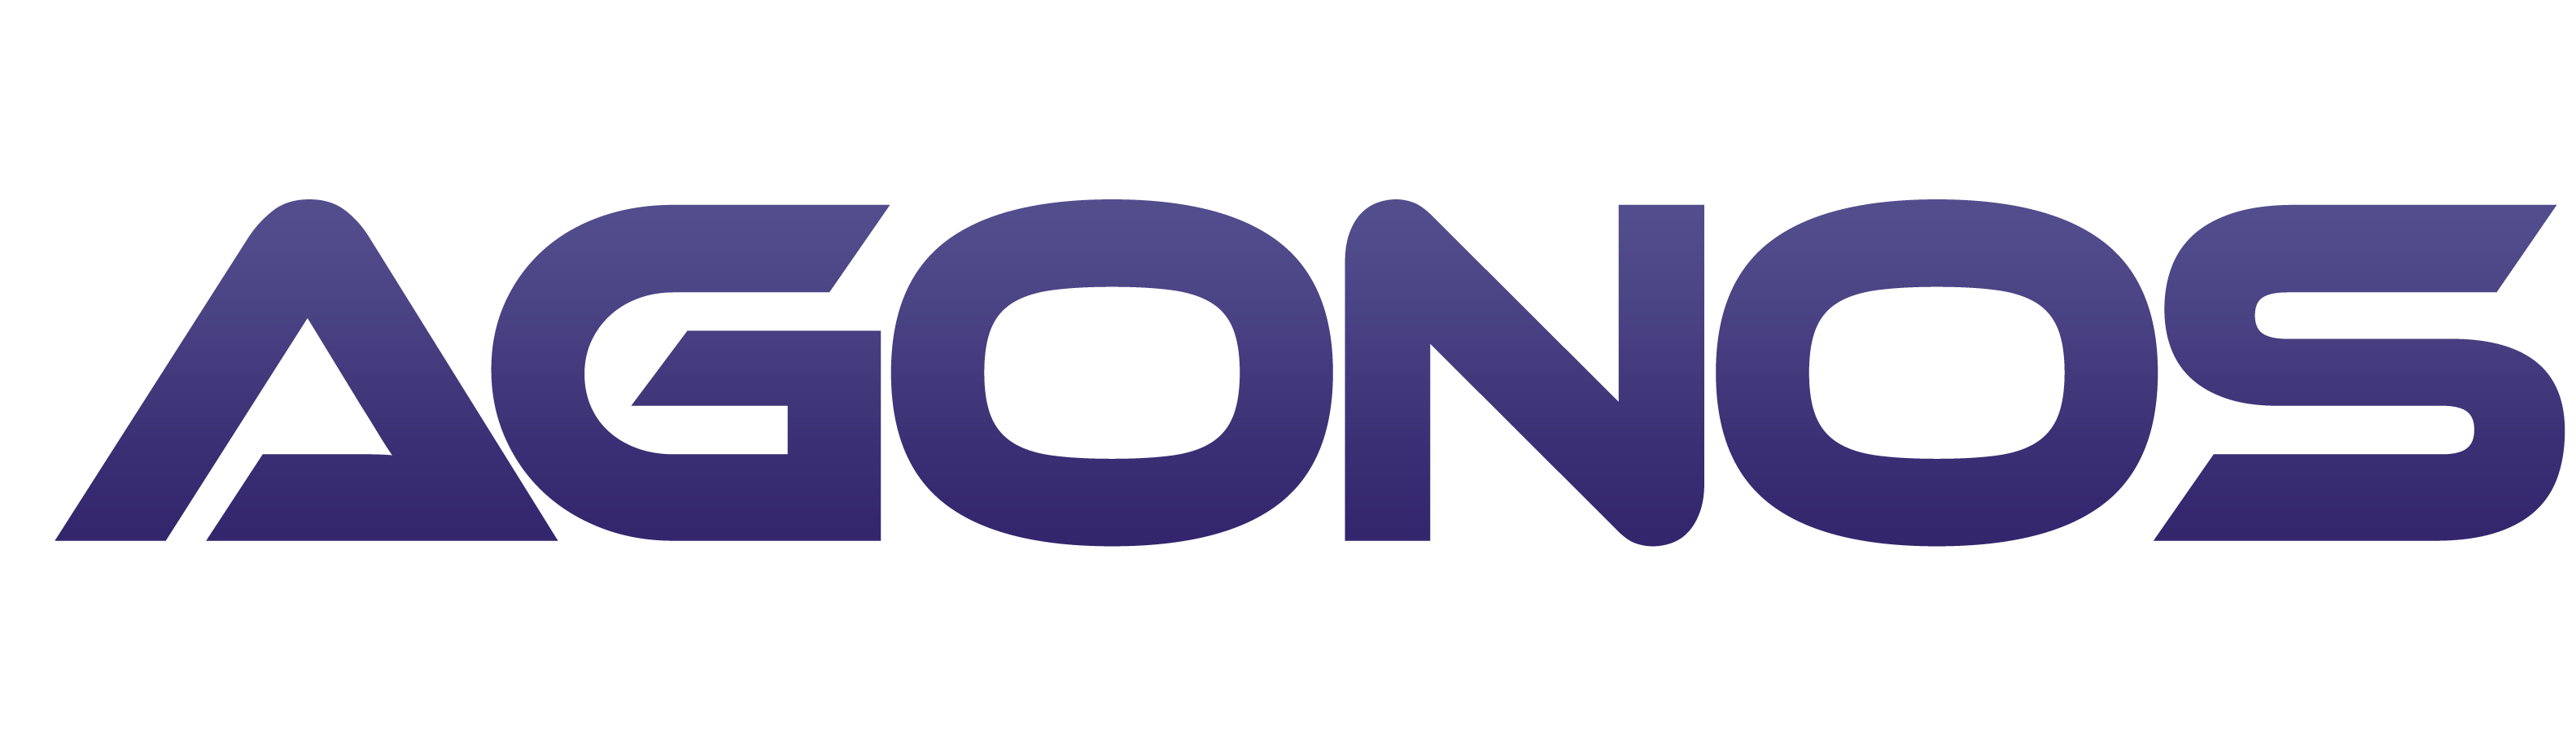 The Agonos logo